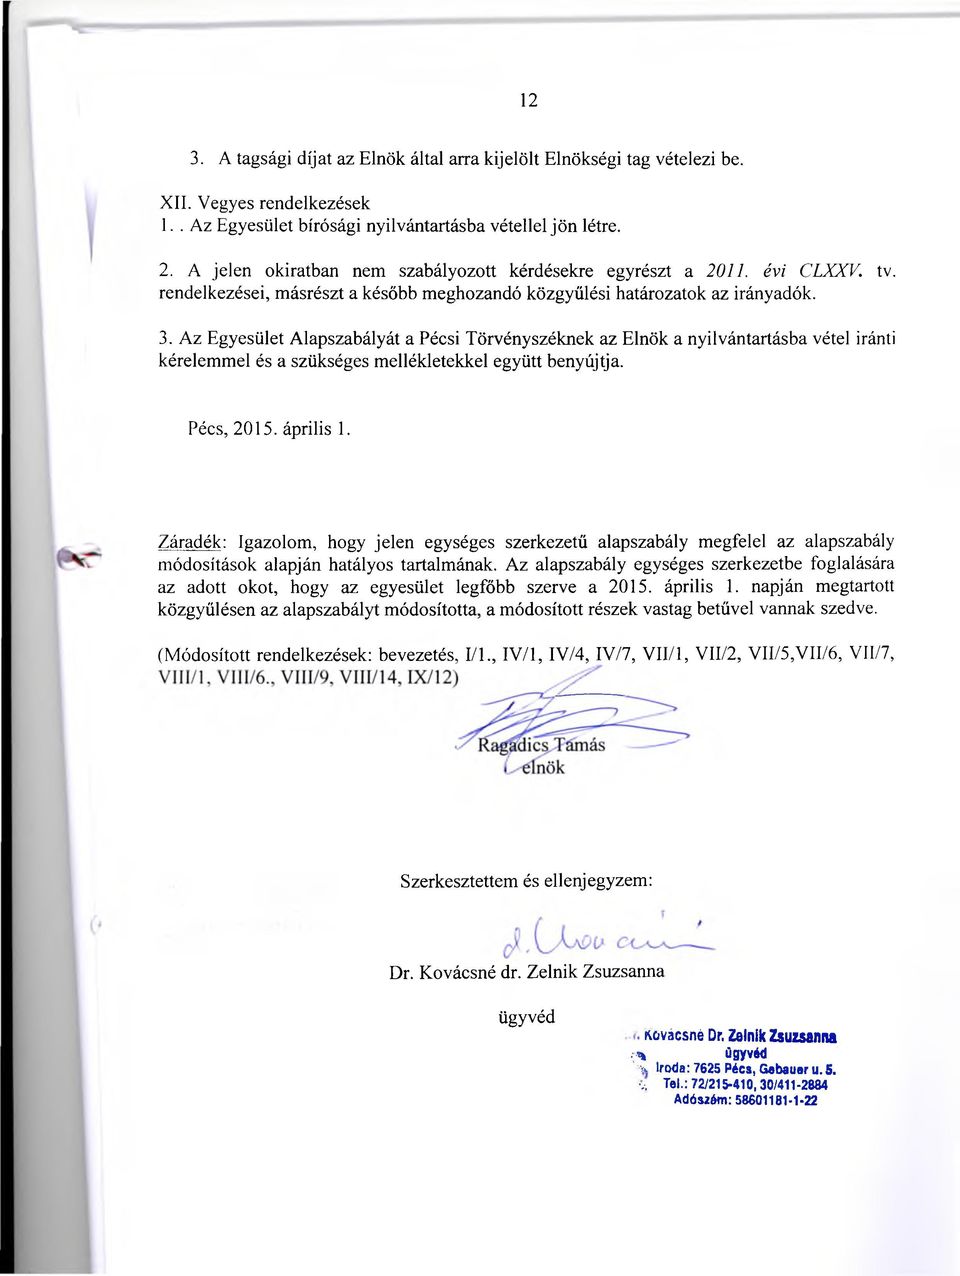 Az Egyesület Alapszabályát a Pécsi Törvényszéknek az Elnök a nyilvántartásba vétel iránti kérelemmel és a szükséges mellékletekkel együtt benyújtja. Pécs, 2015. április 1.